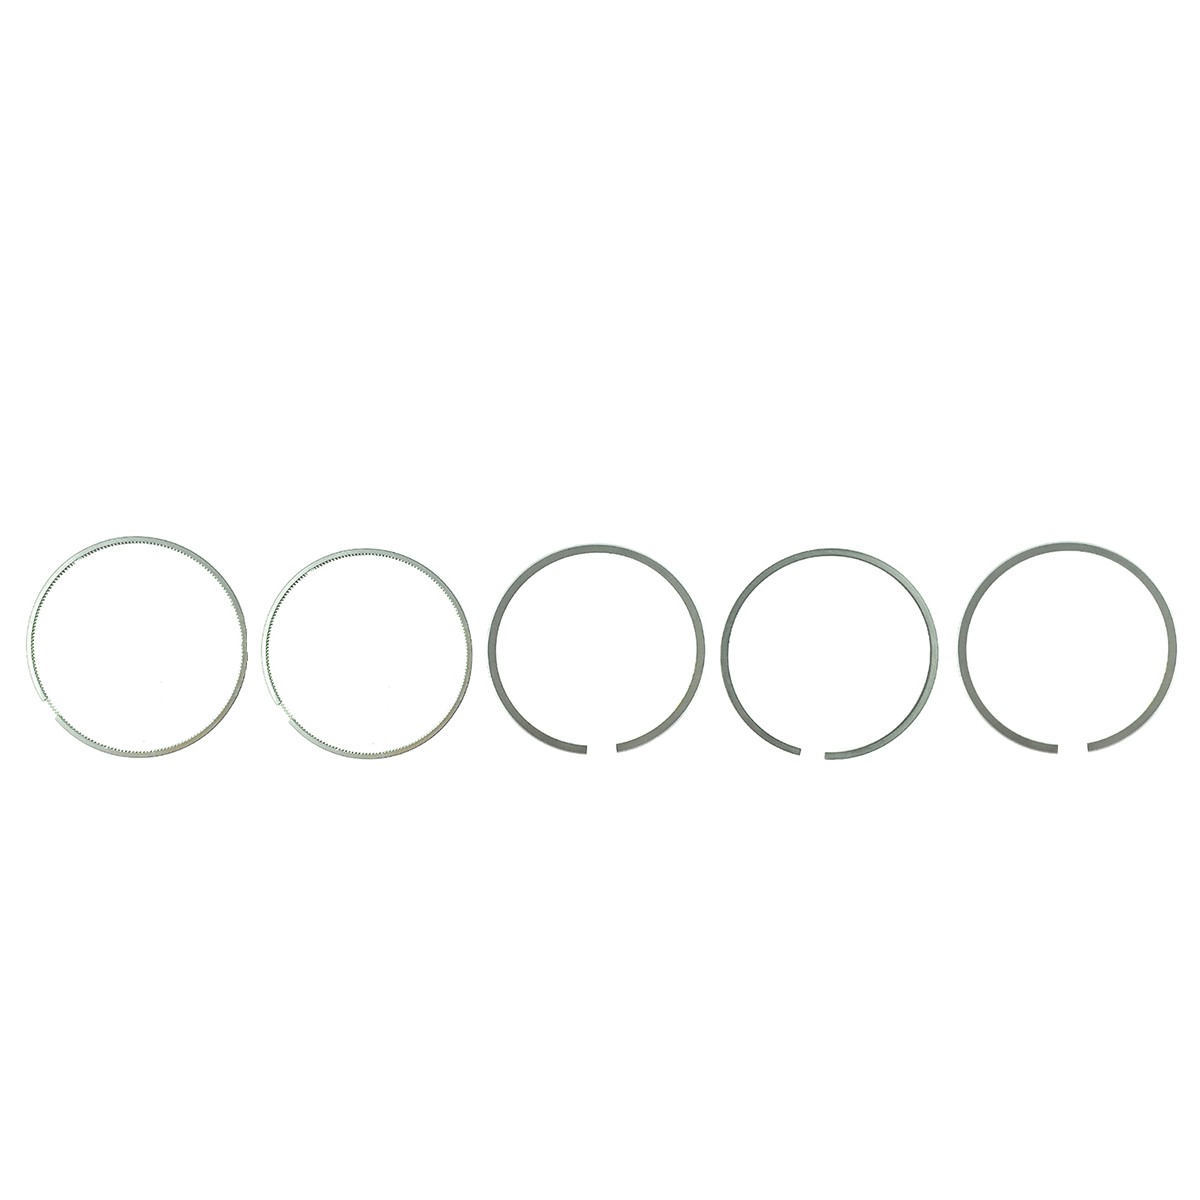 Piston rings / 90 mm / 2 x 2 x 2 x 4.5 x 4.5 / Kubota DS1500/Z1300 / Kubota L240/L260/L280 / 6-26-100-06